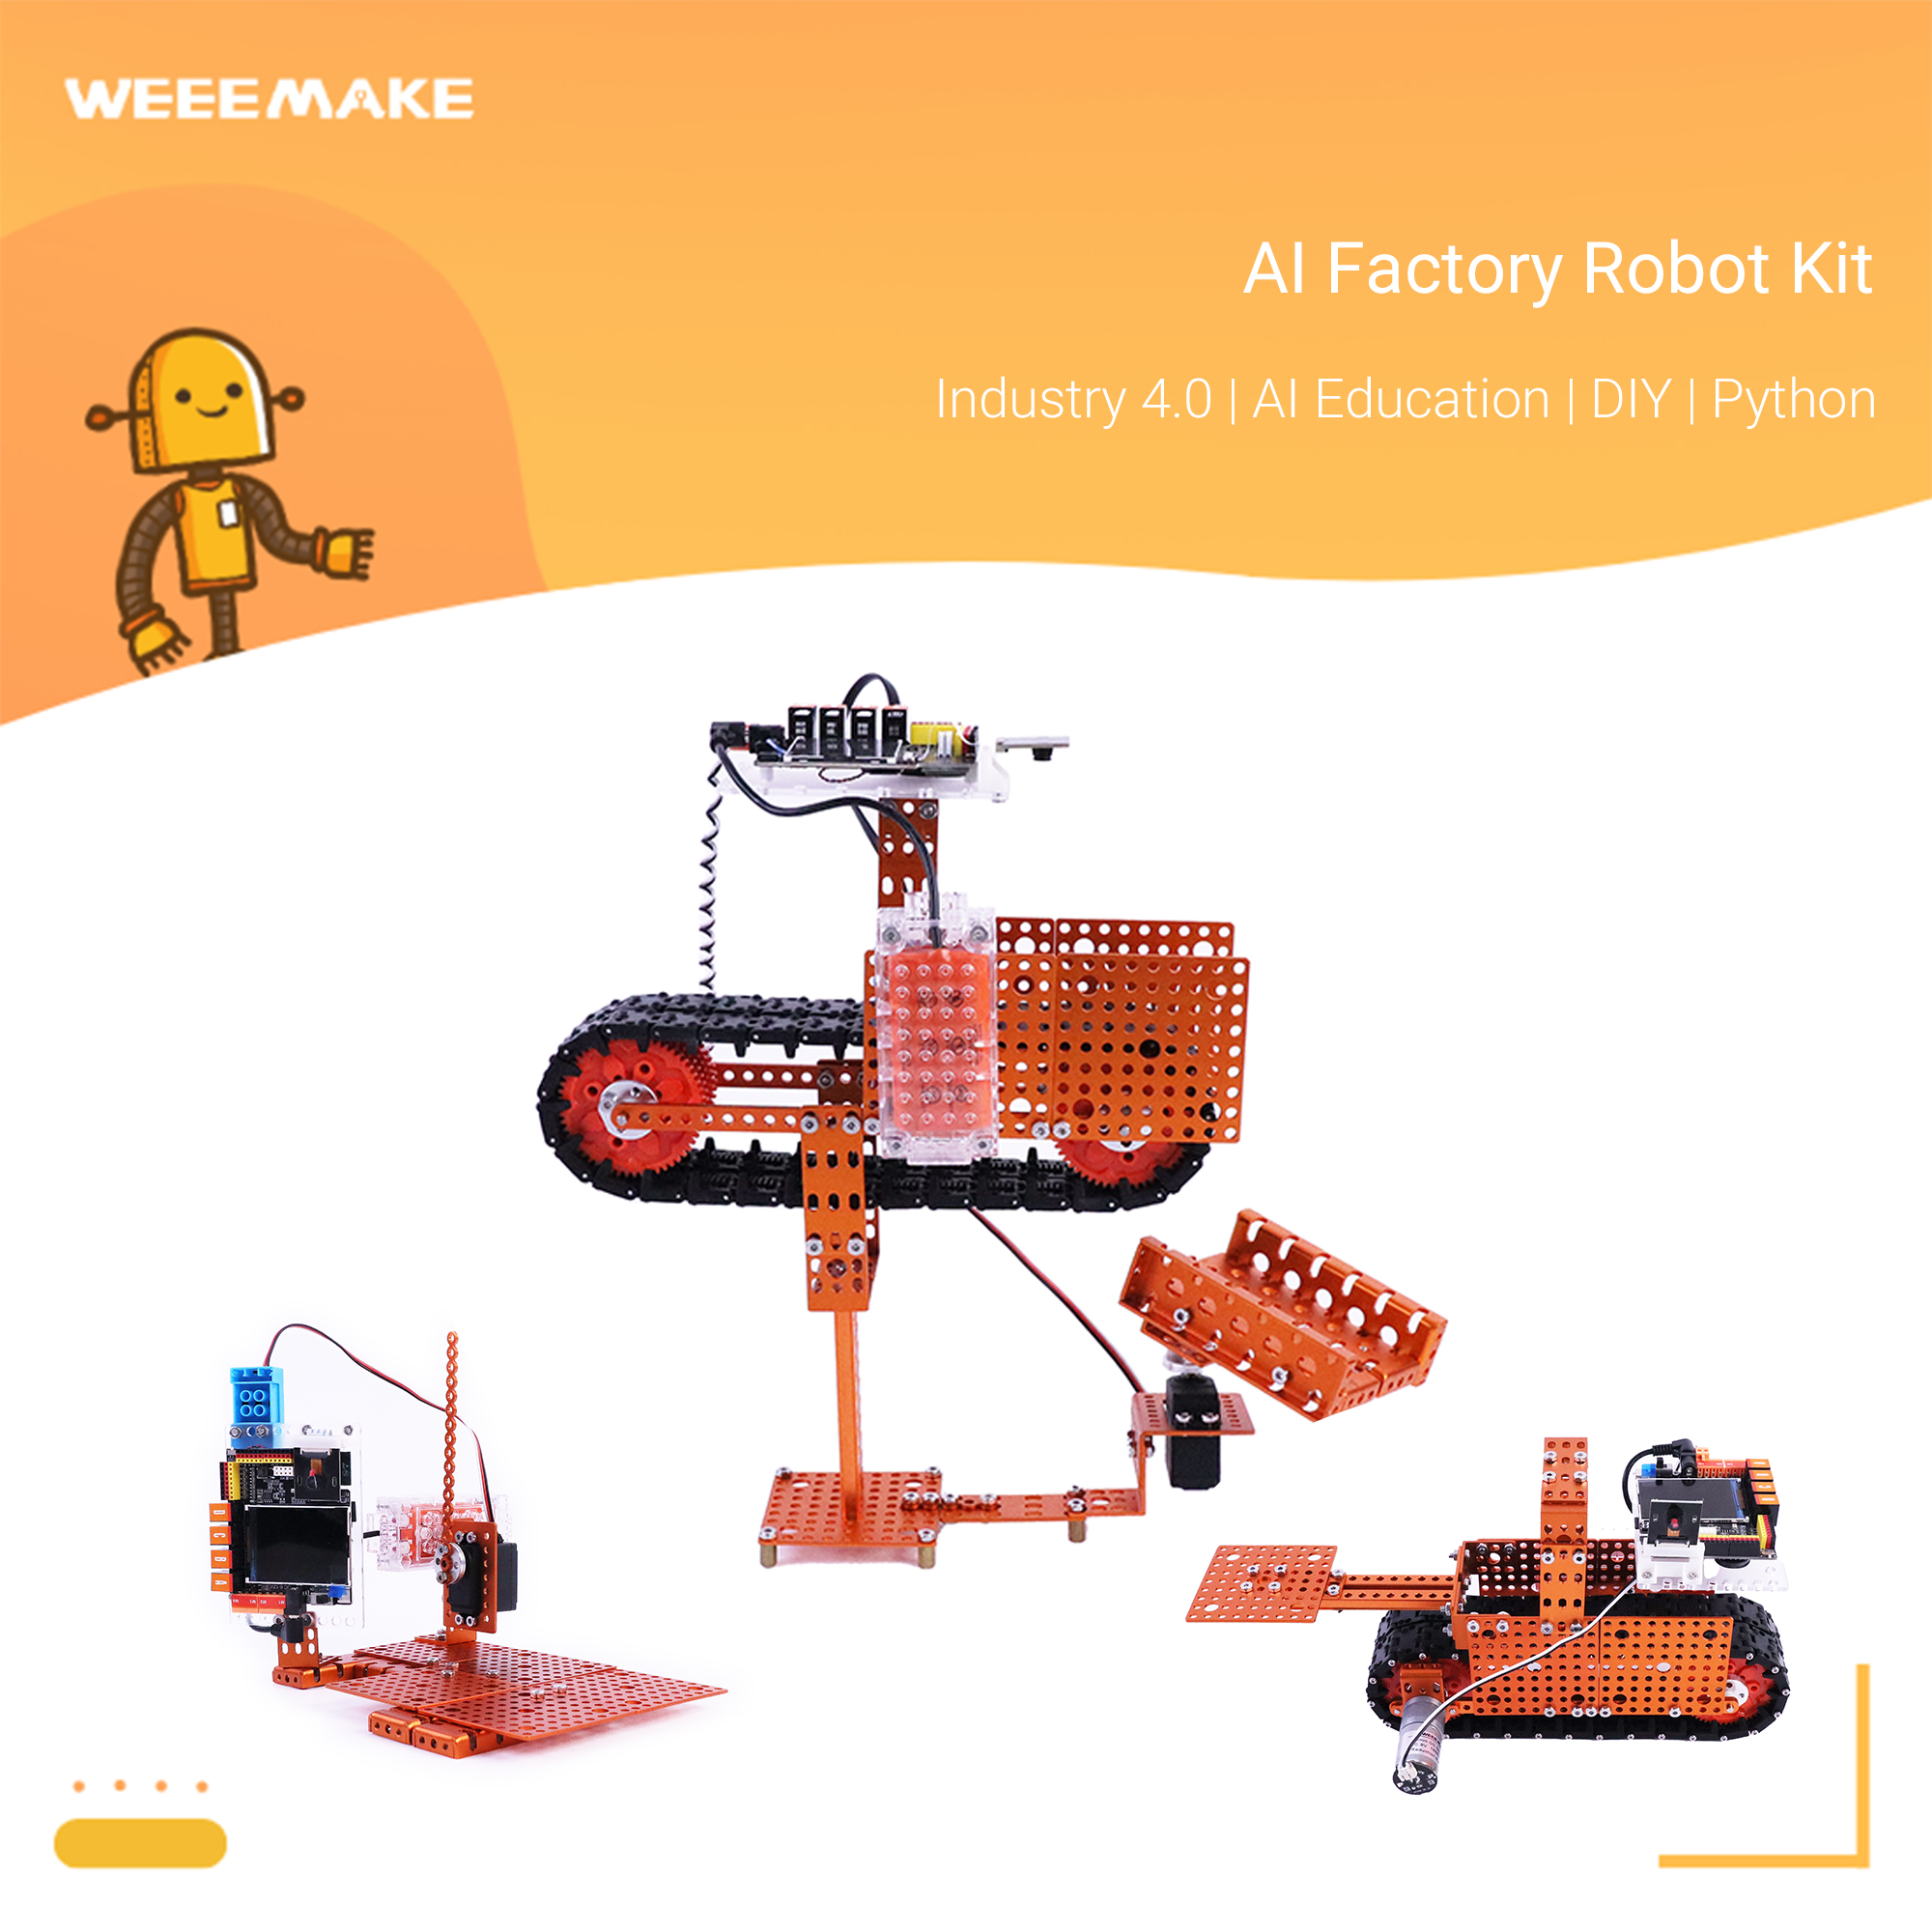 एआई फैक्टरी रोबोट किट - एआई रोबोट शिक्षा श्रृंखला